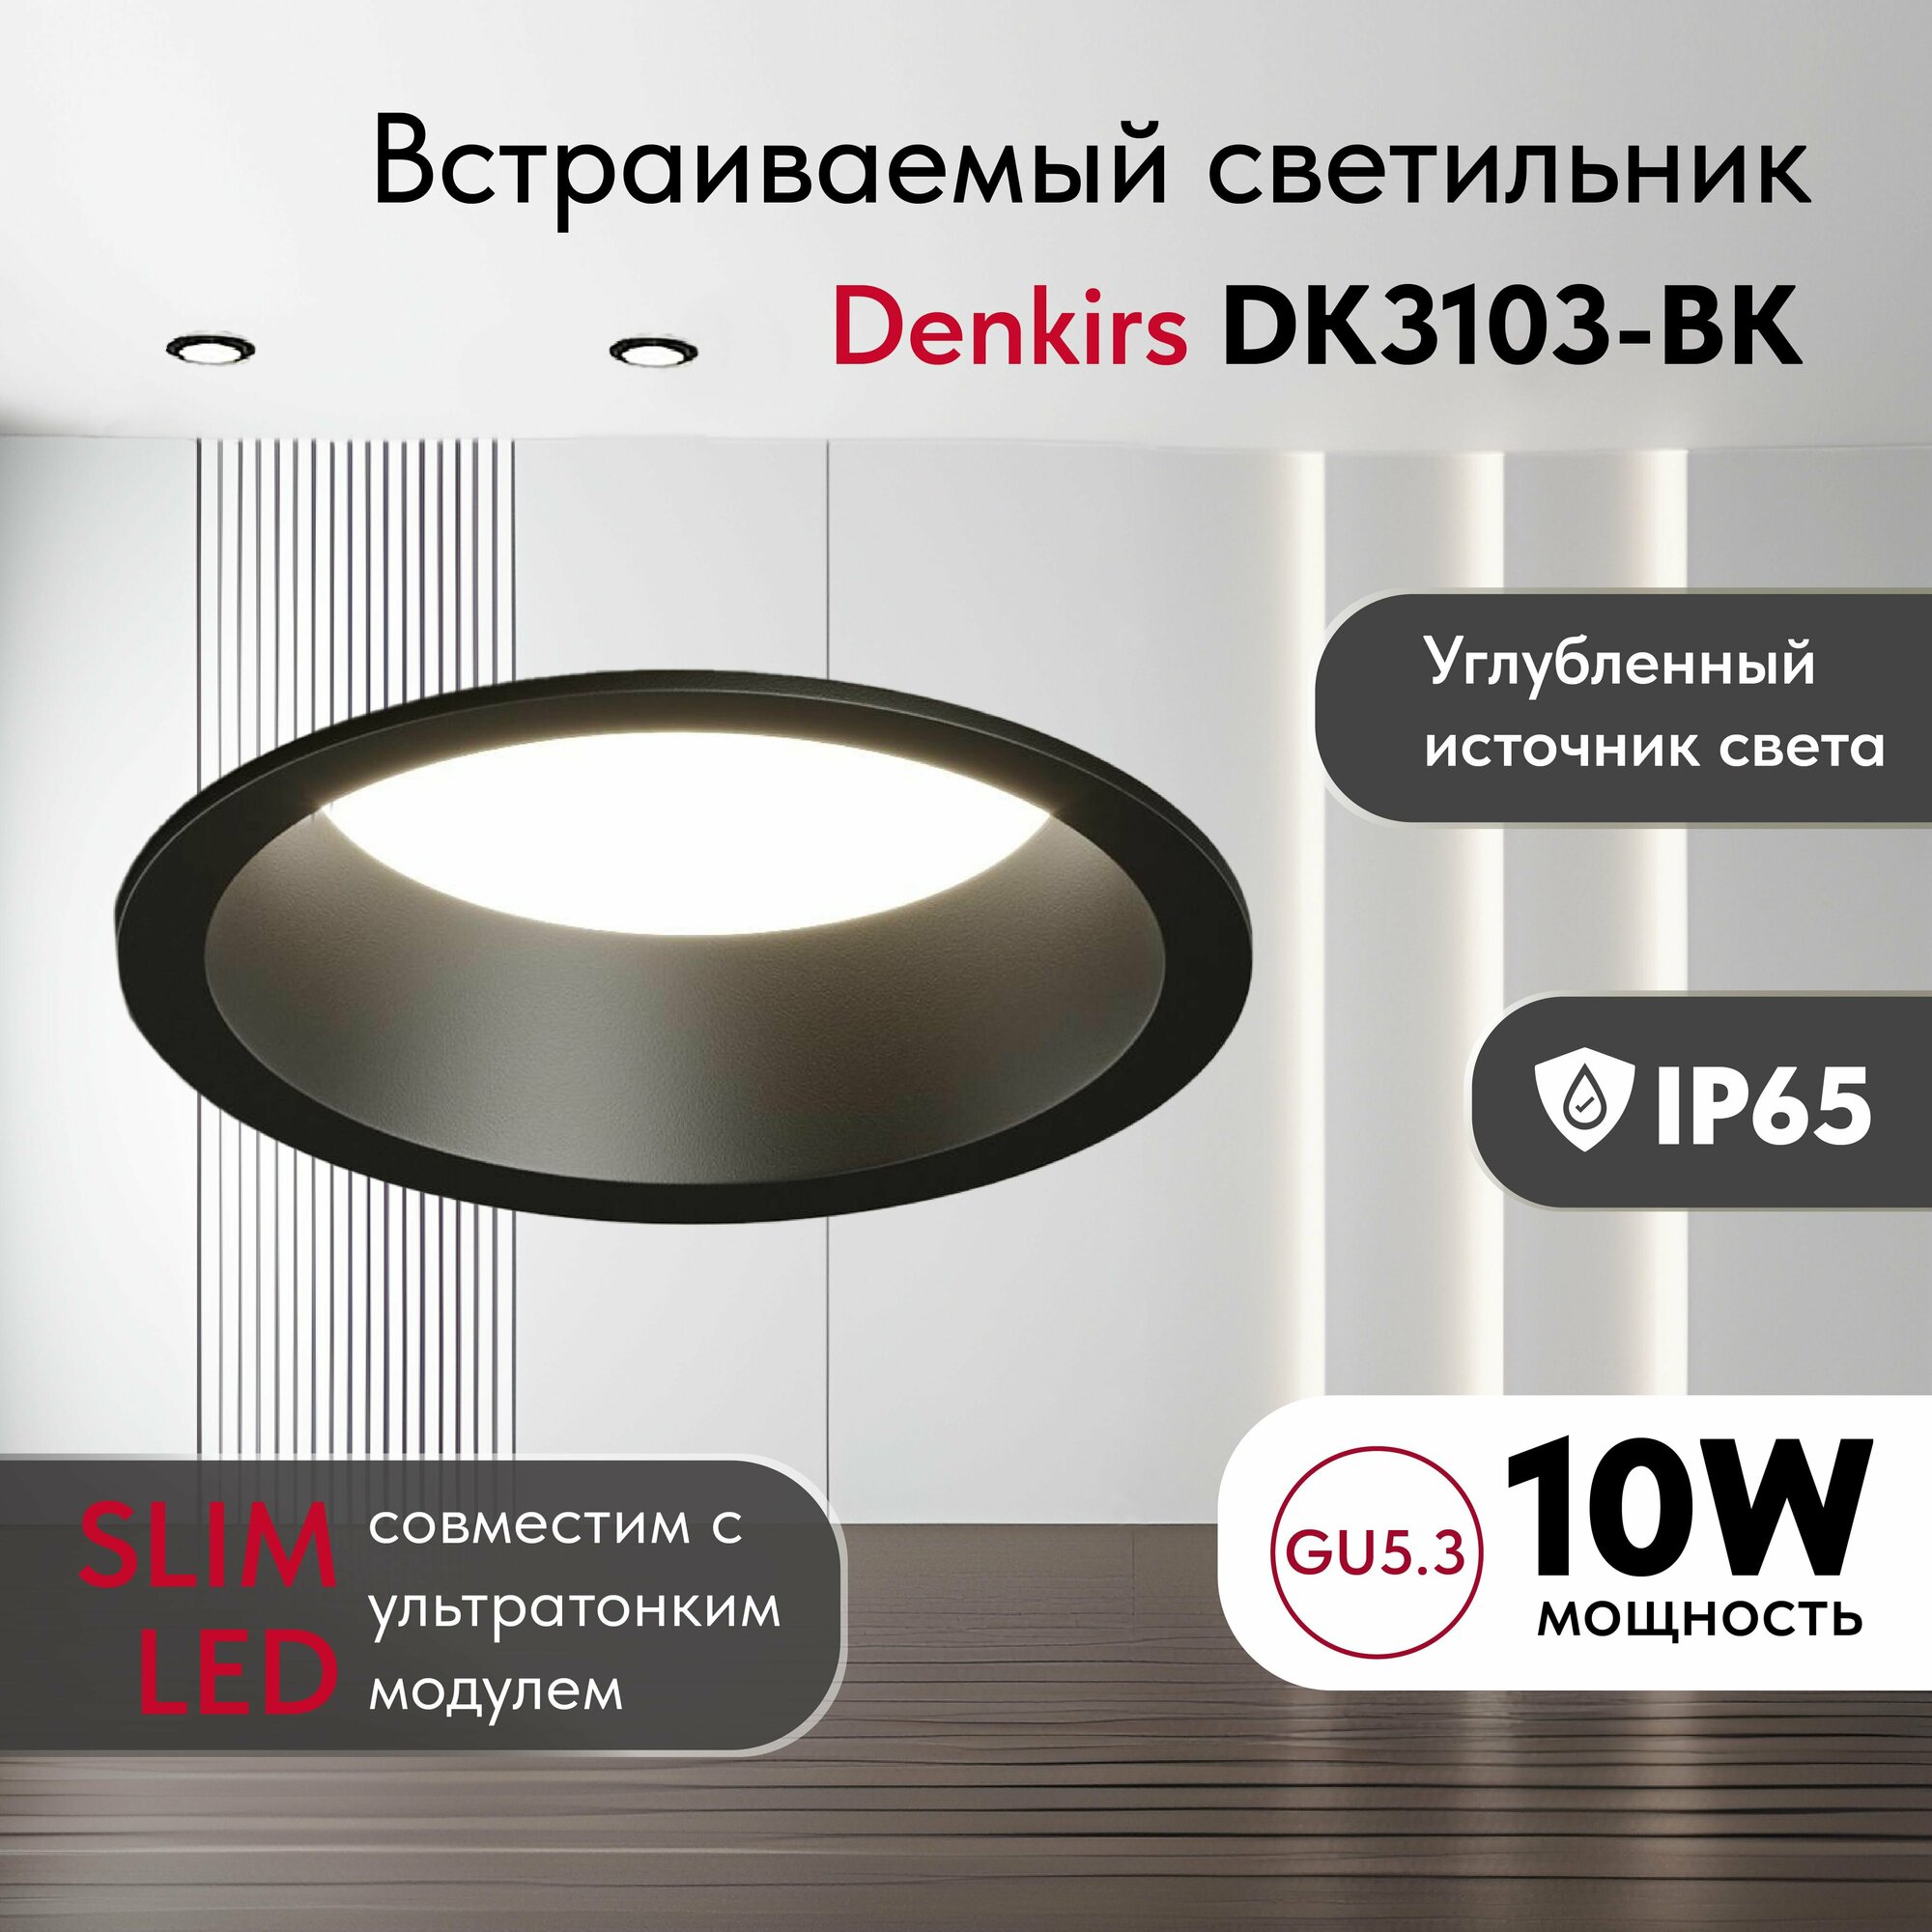 Светильник потолочный встраиваемый, влагозащищённый DENKIRS DK3103-BK, IP 65, 10 Вт, GU5.3, LED, черный, пластик